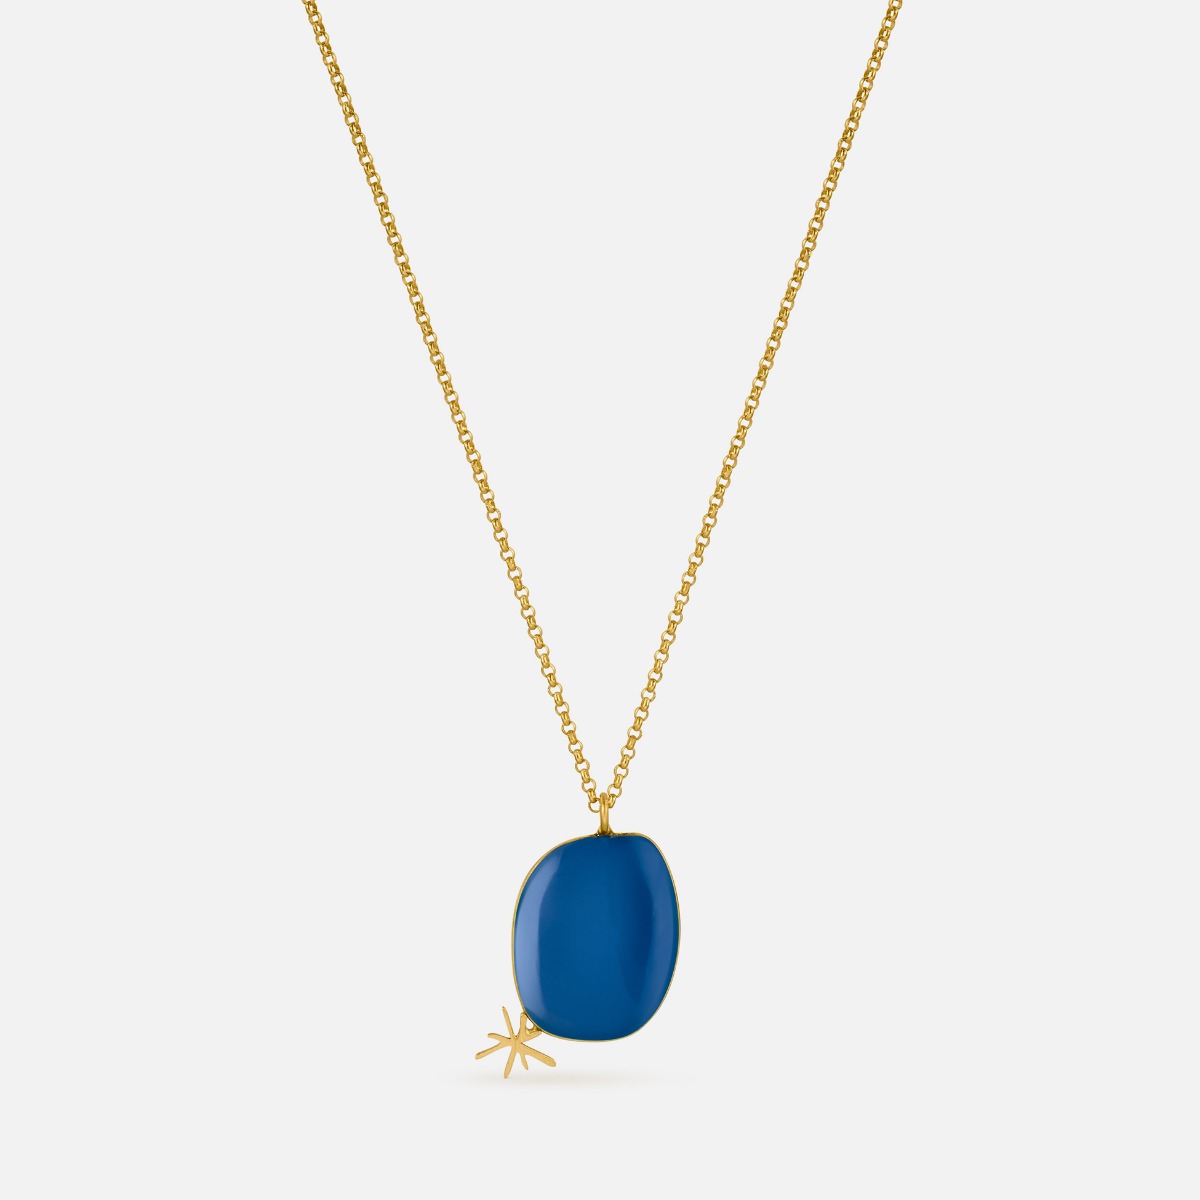 Miró Blue Pendant